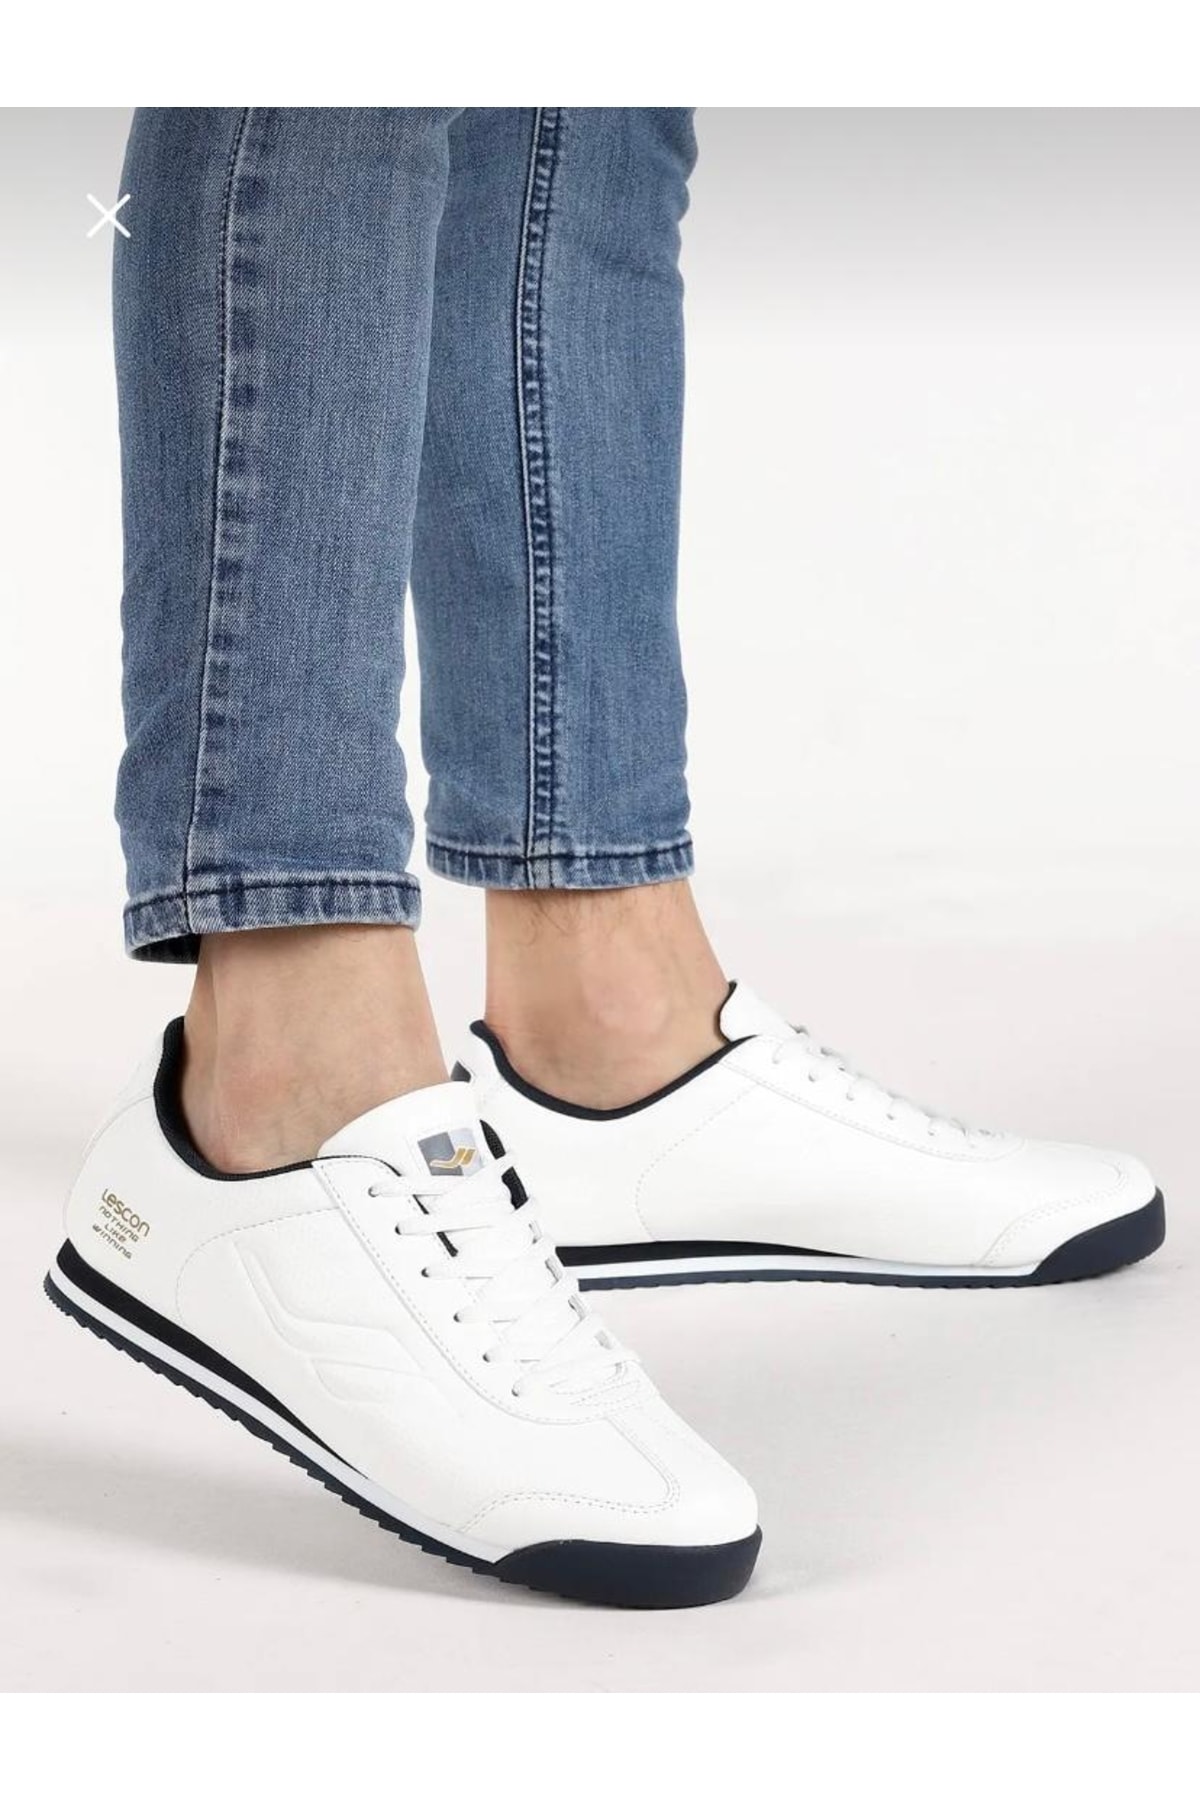 Lescon Erkek Beyaz Cilt Spor Ayakkabı Yenilikçi Tarzıyla Şıklığı Ve Konforu Bir Arada Sunan Model